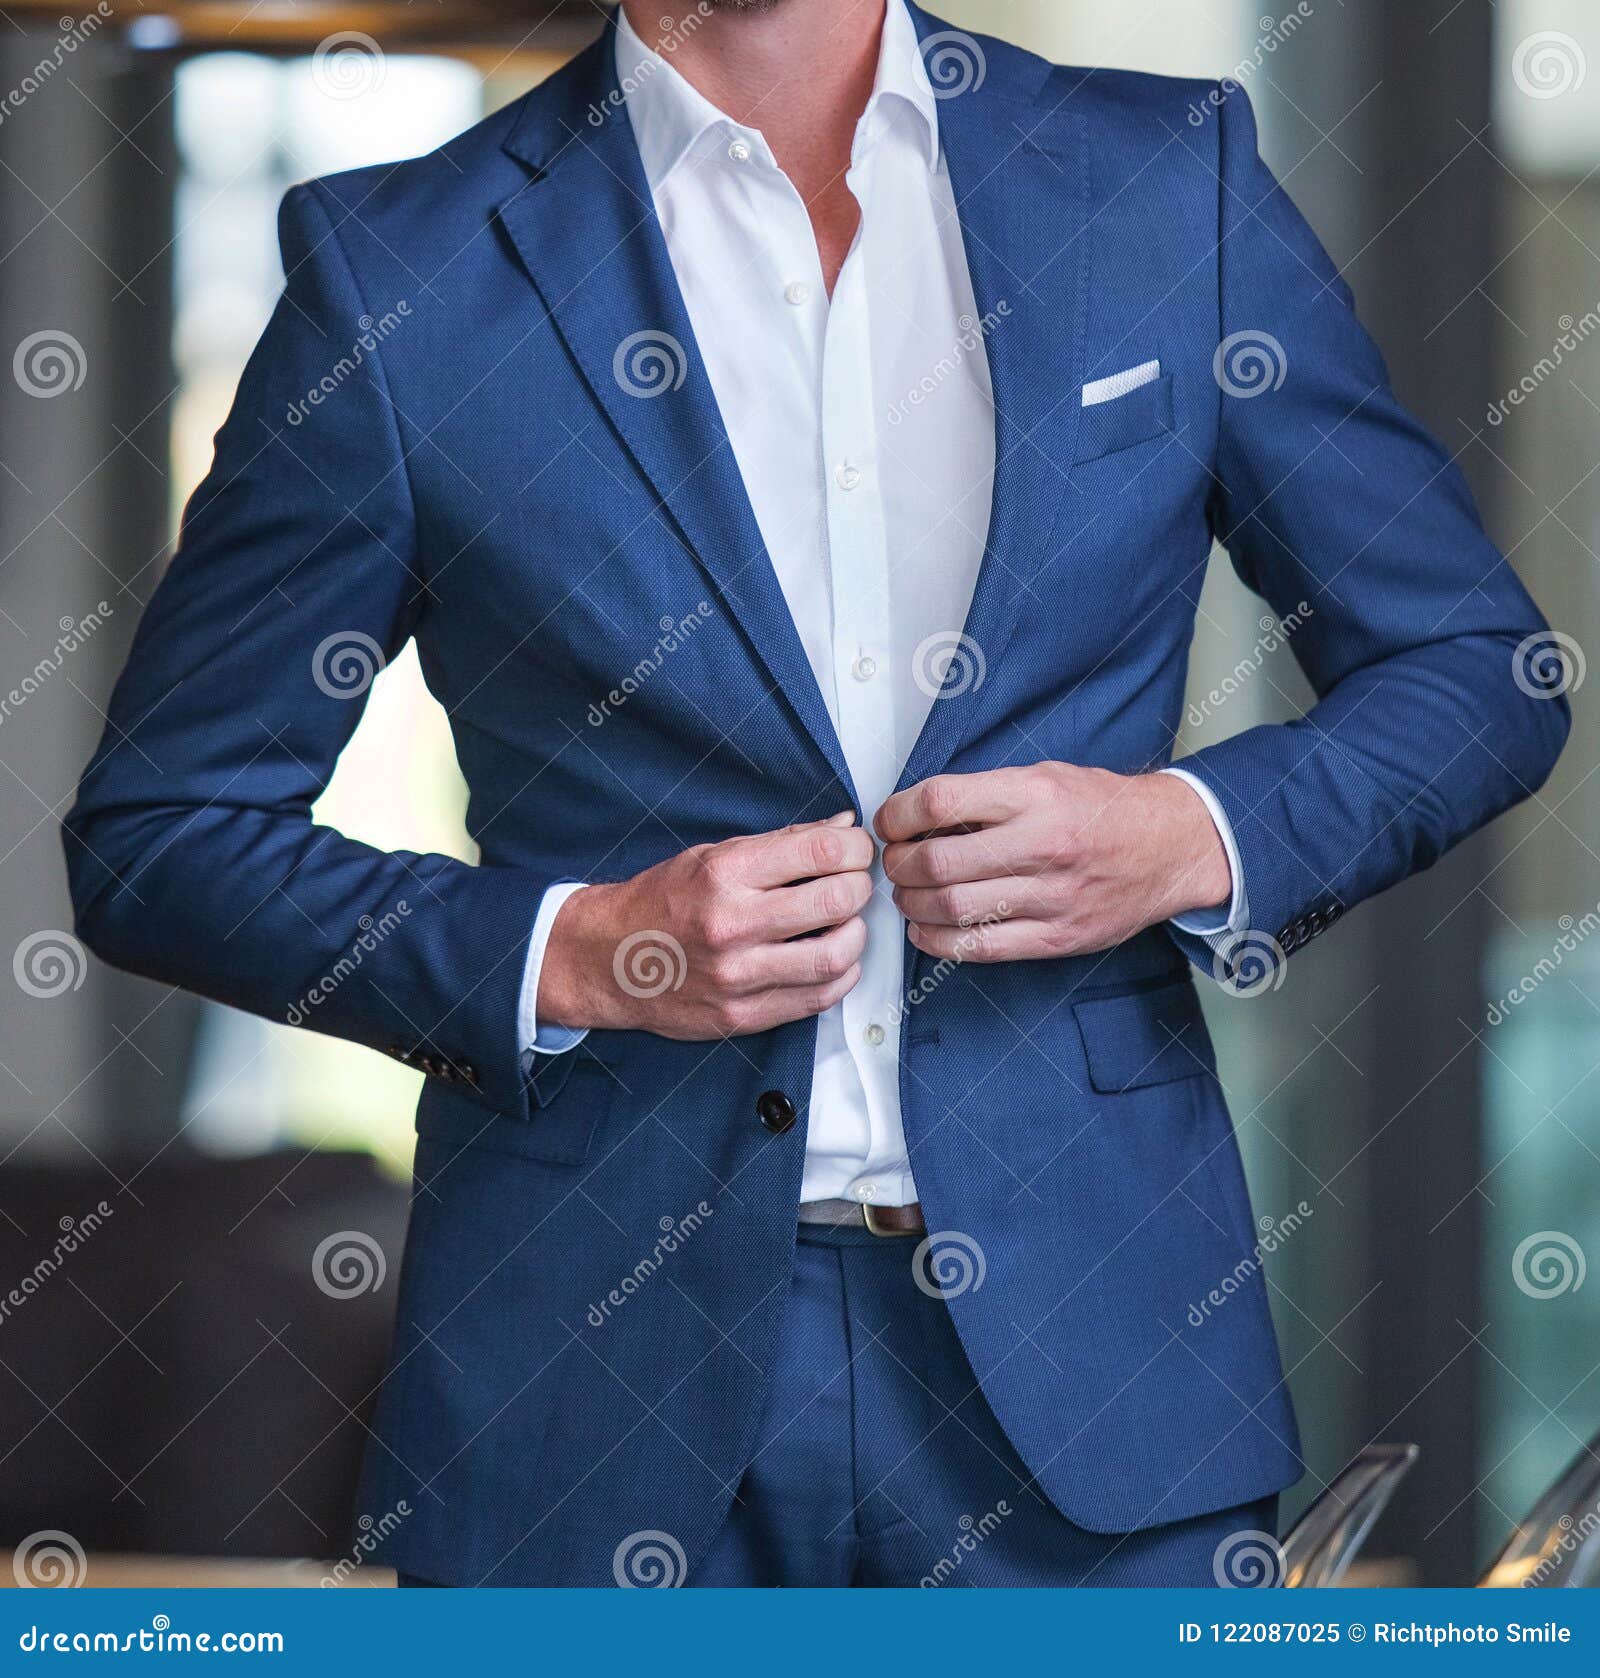 smart business suit